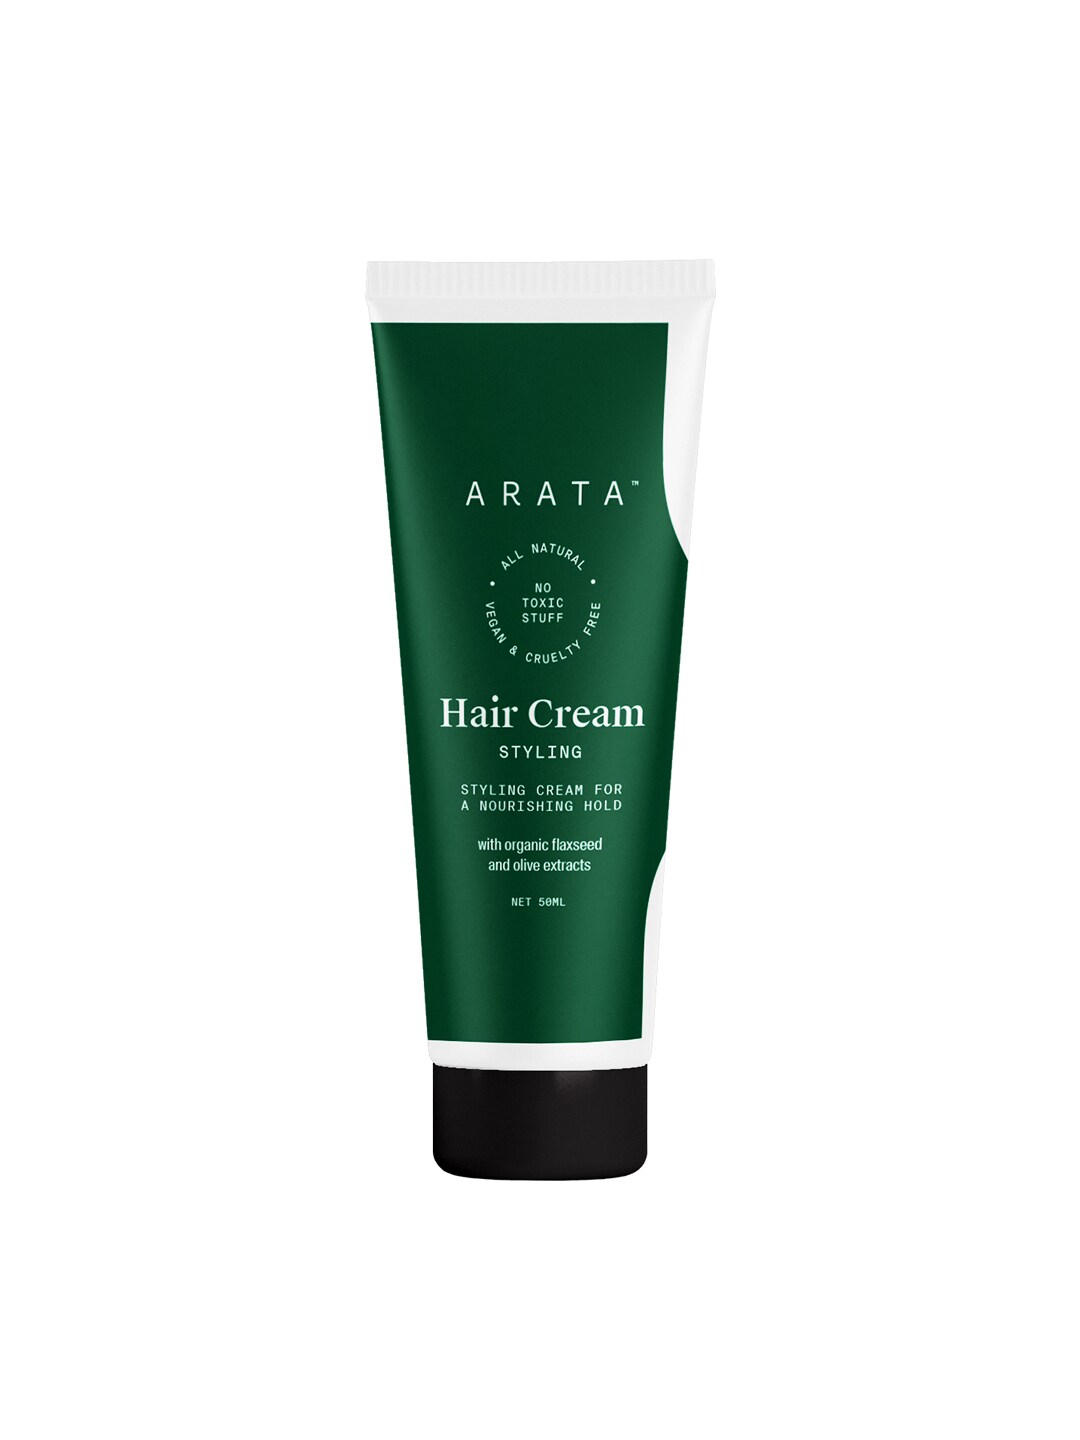 ARATA Hair Cream 50 ml Price in India